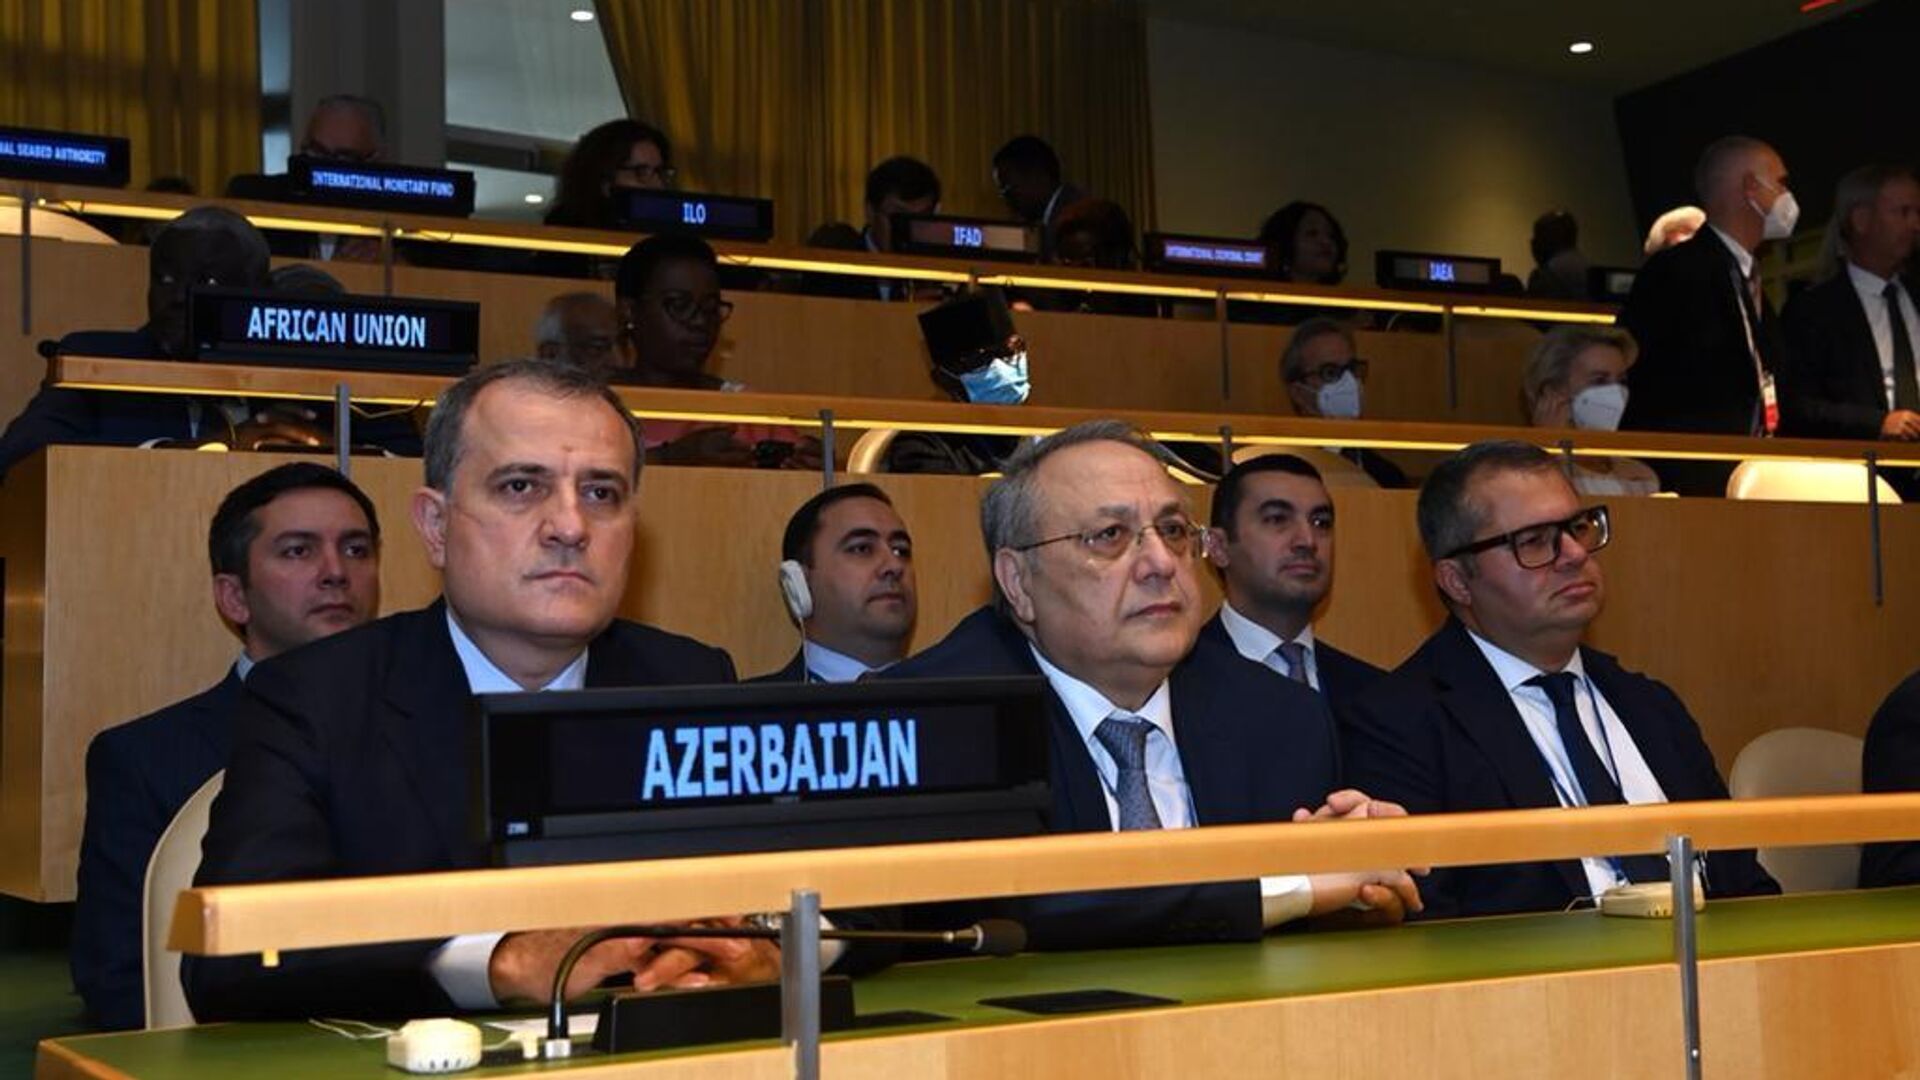 Министр иностранных дел Азербайджана Джейхун Байрамов принял участие в церемонии открытия 77-й Генеральной ассамблеи ООН в Нью-Йорке - Sputnik Azərbaycan, 1920, 24.09.2022